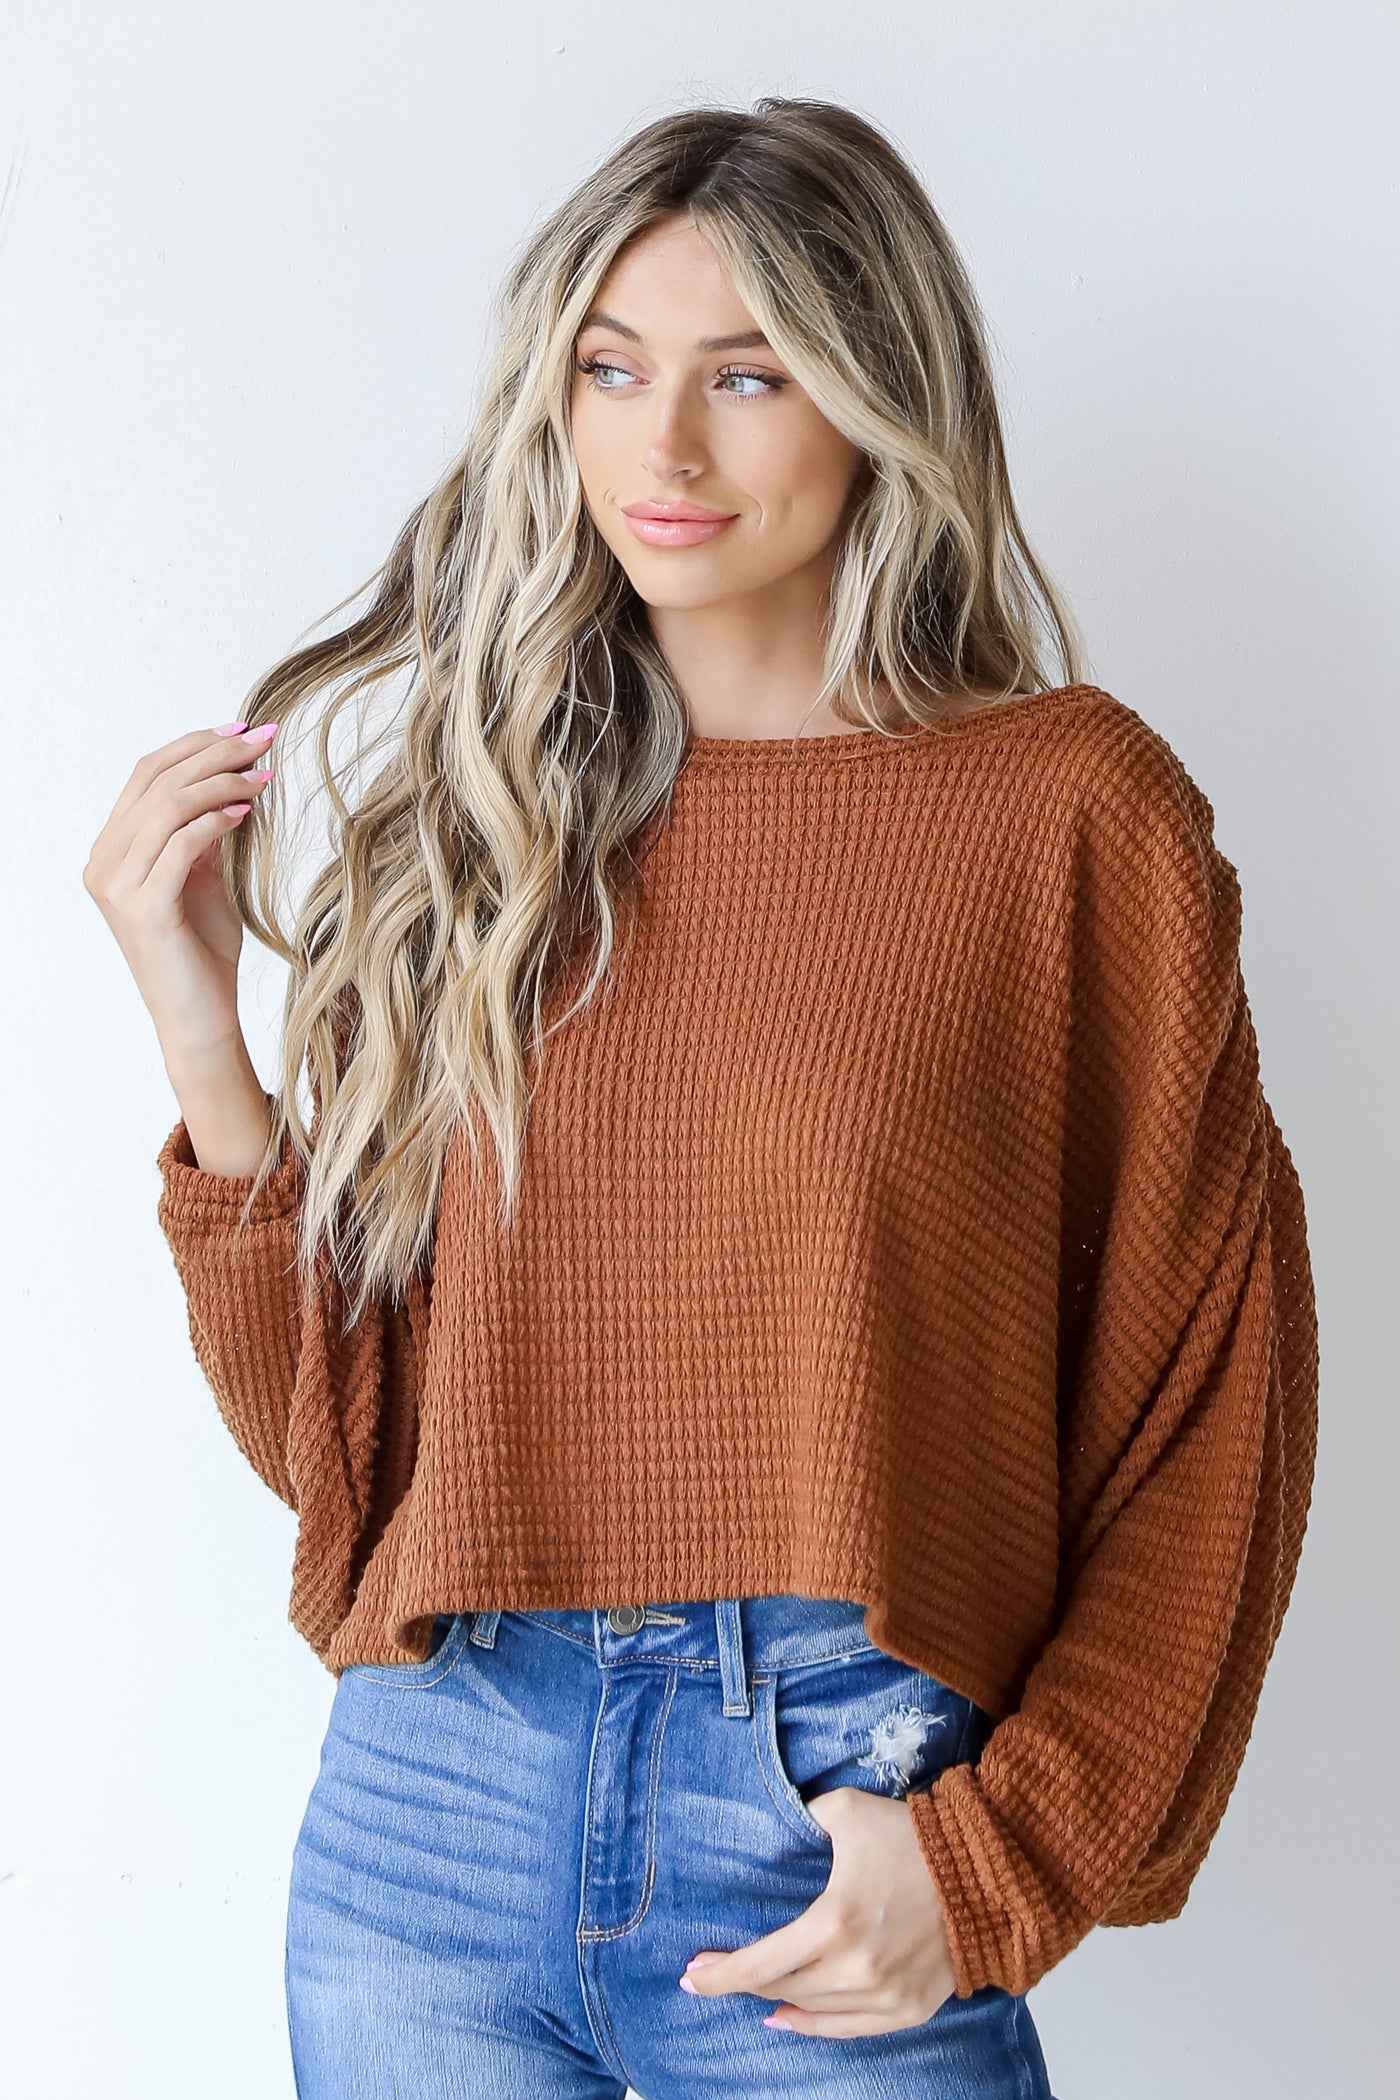 model wearing a Waffle Knit Top